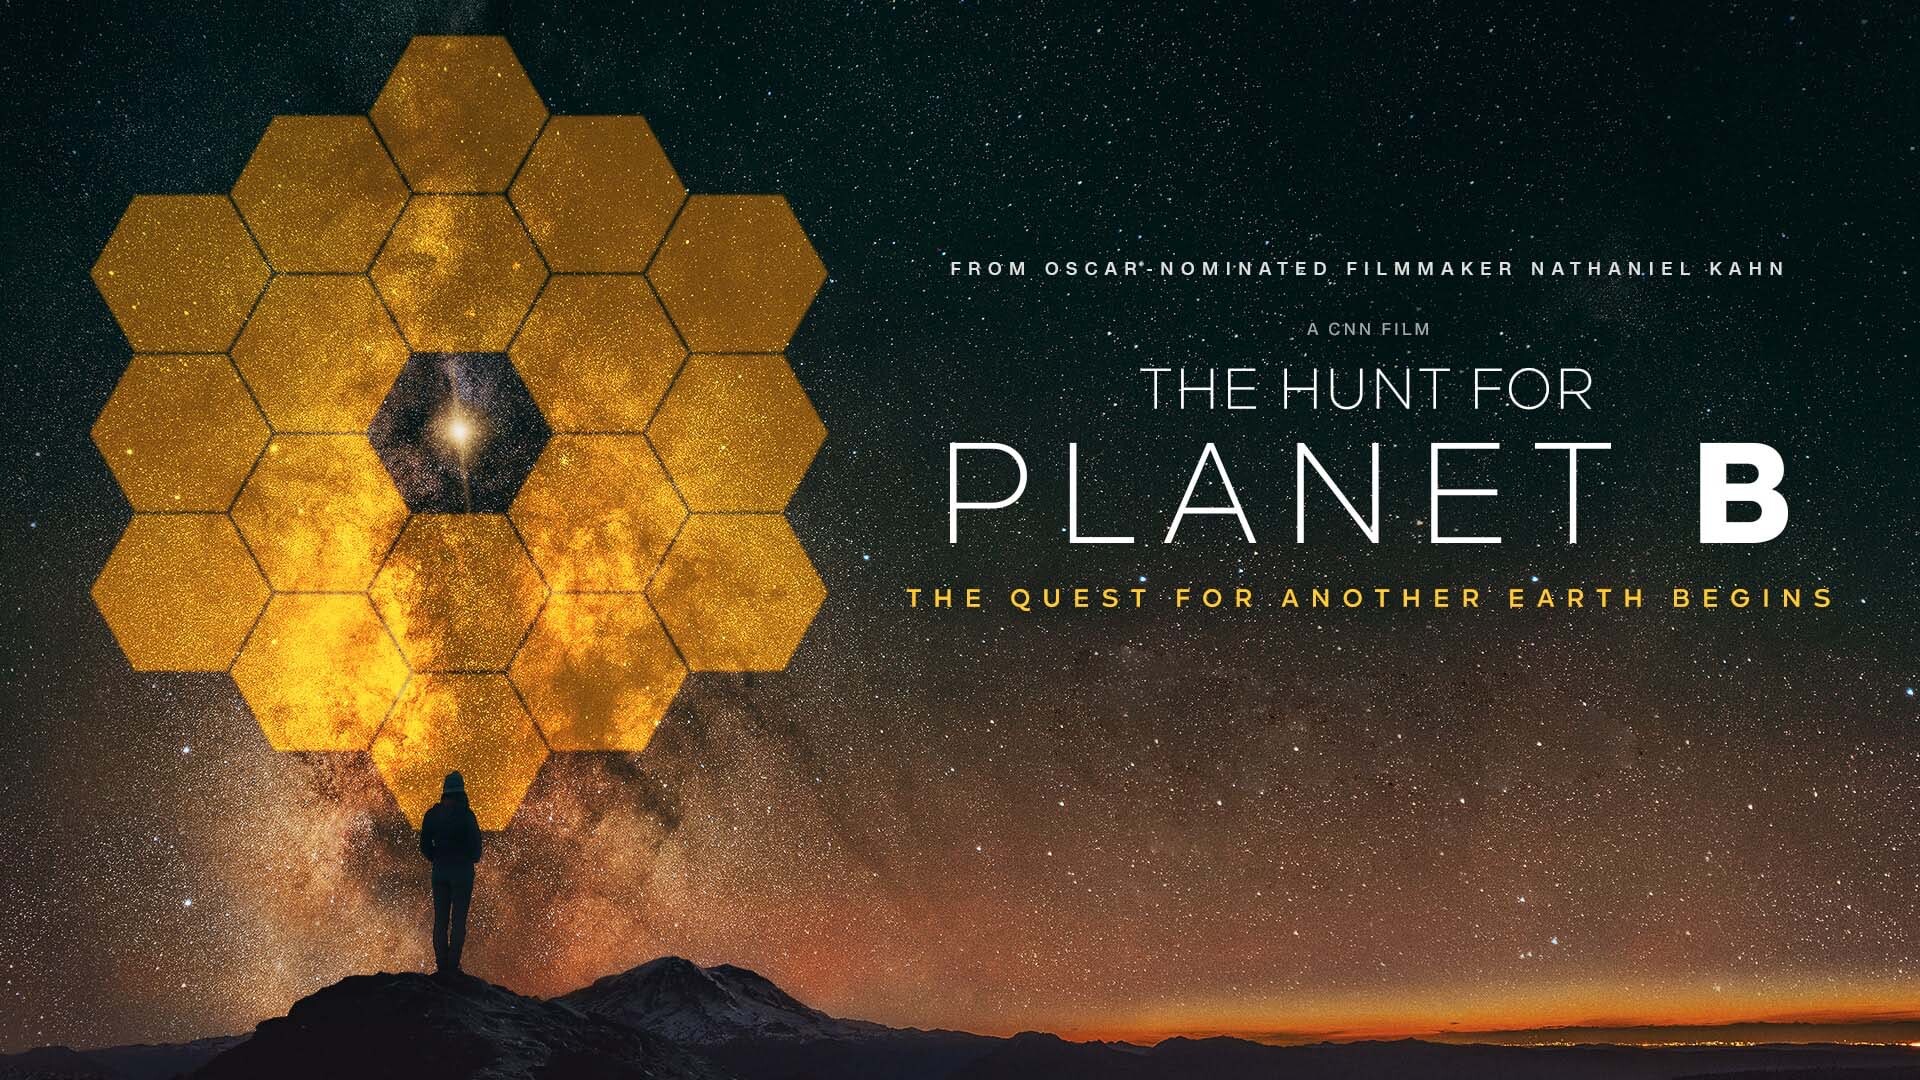 ნადირობა პლანეტა B-ზე / The Hunt for Planet B